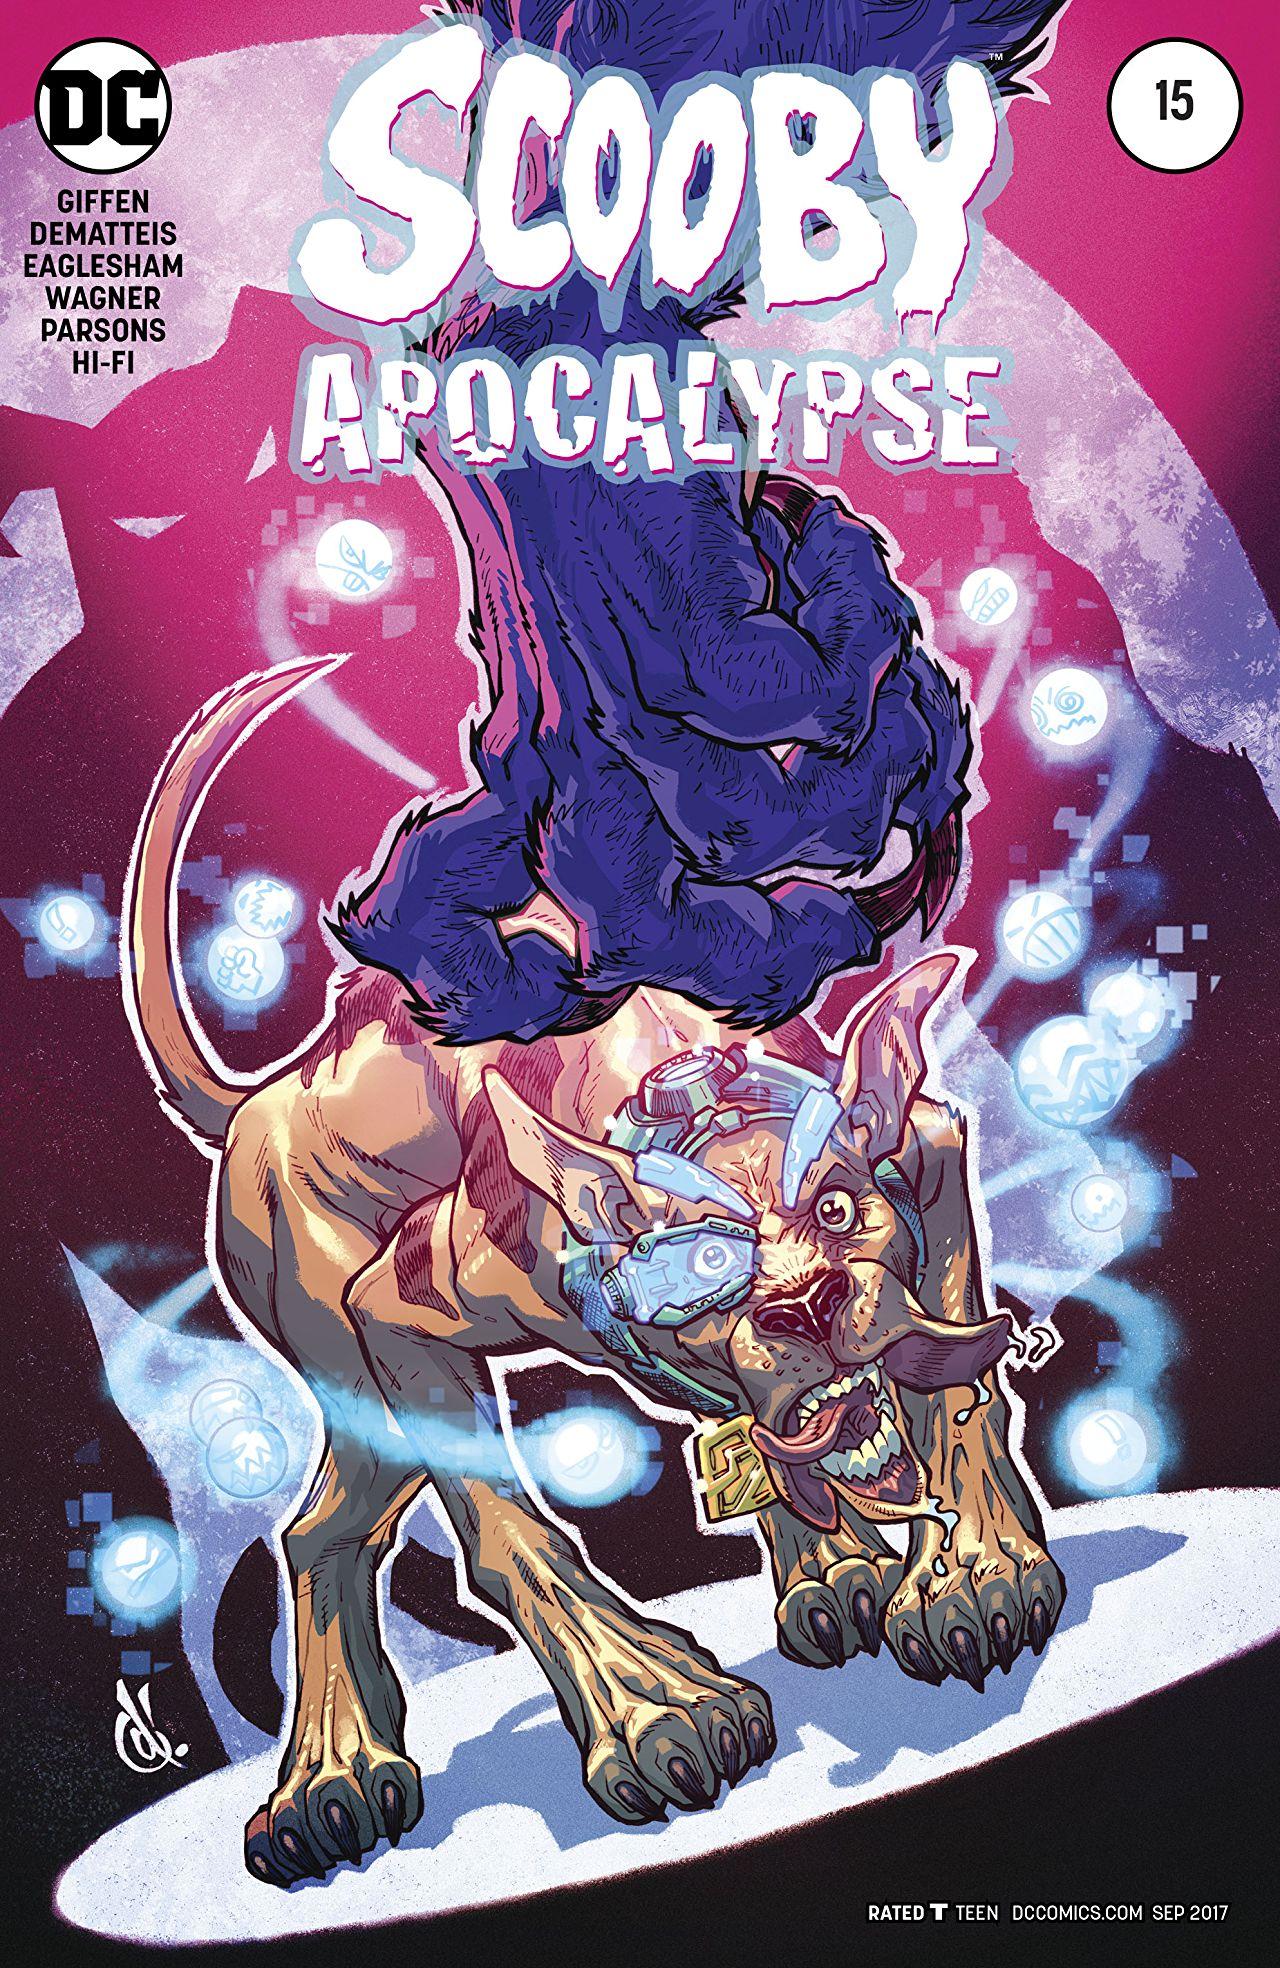 Scooby Apocalypse Vol. 1 #15